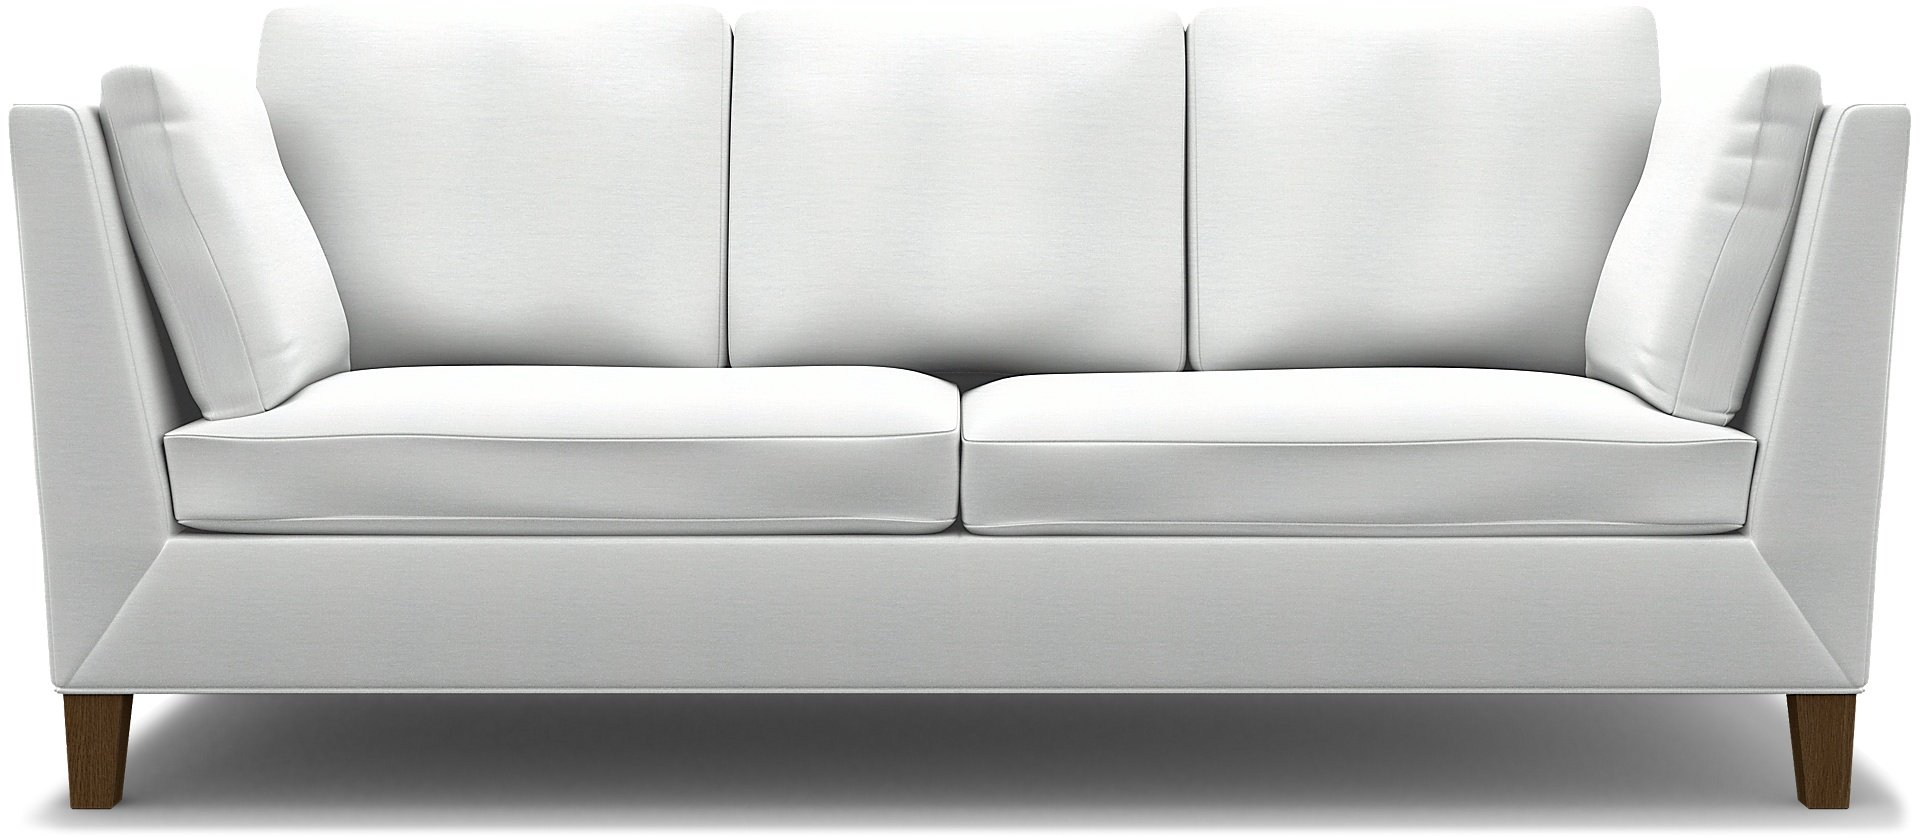 IKEA - Stockholm 3 Seater Sofa Cover , White, Linen - Bemz